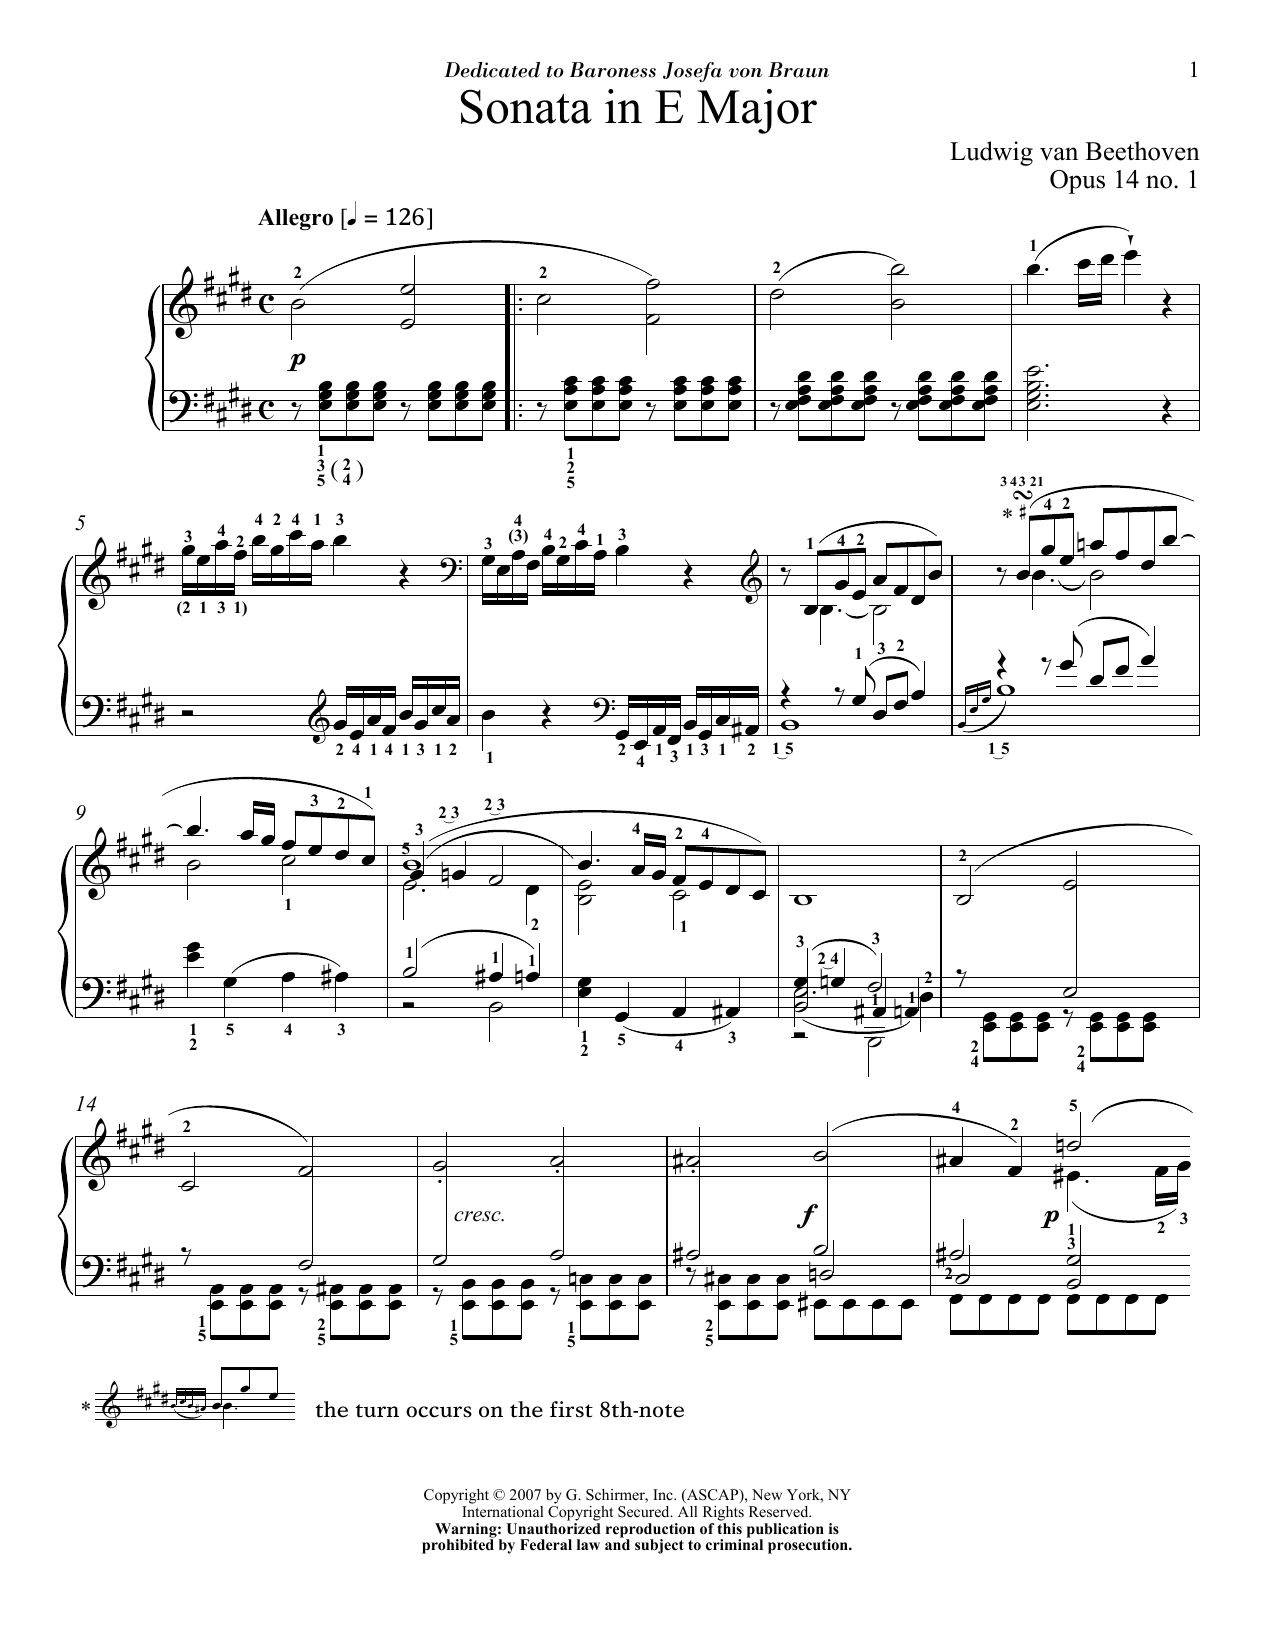 Ludwig van Beethoven Piano Sonata No. 9, Op. 14, No. 1 Sheet Music Notes & Chords for Piano - Download or Print PDF